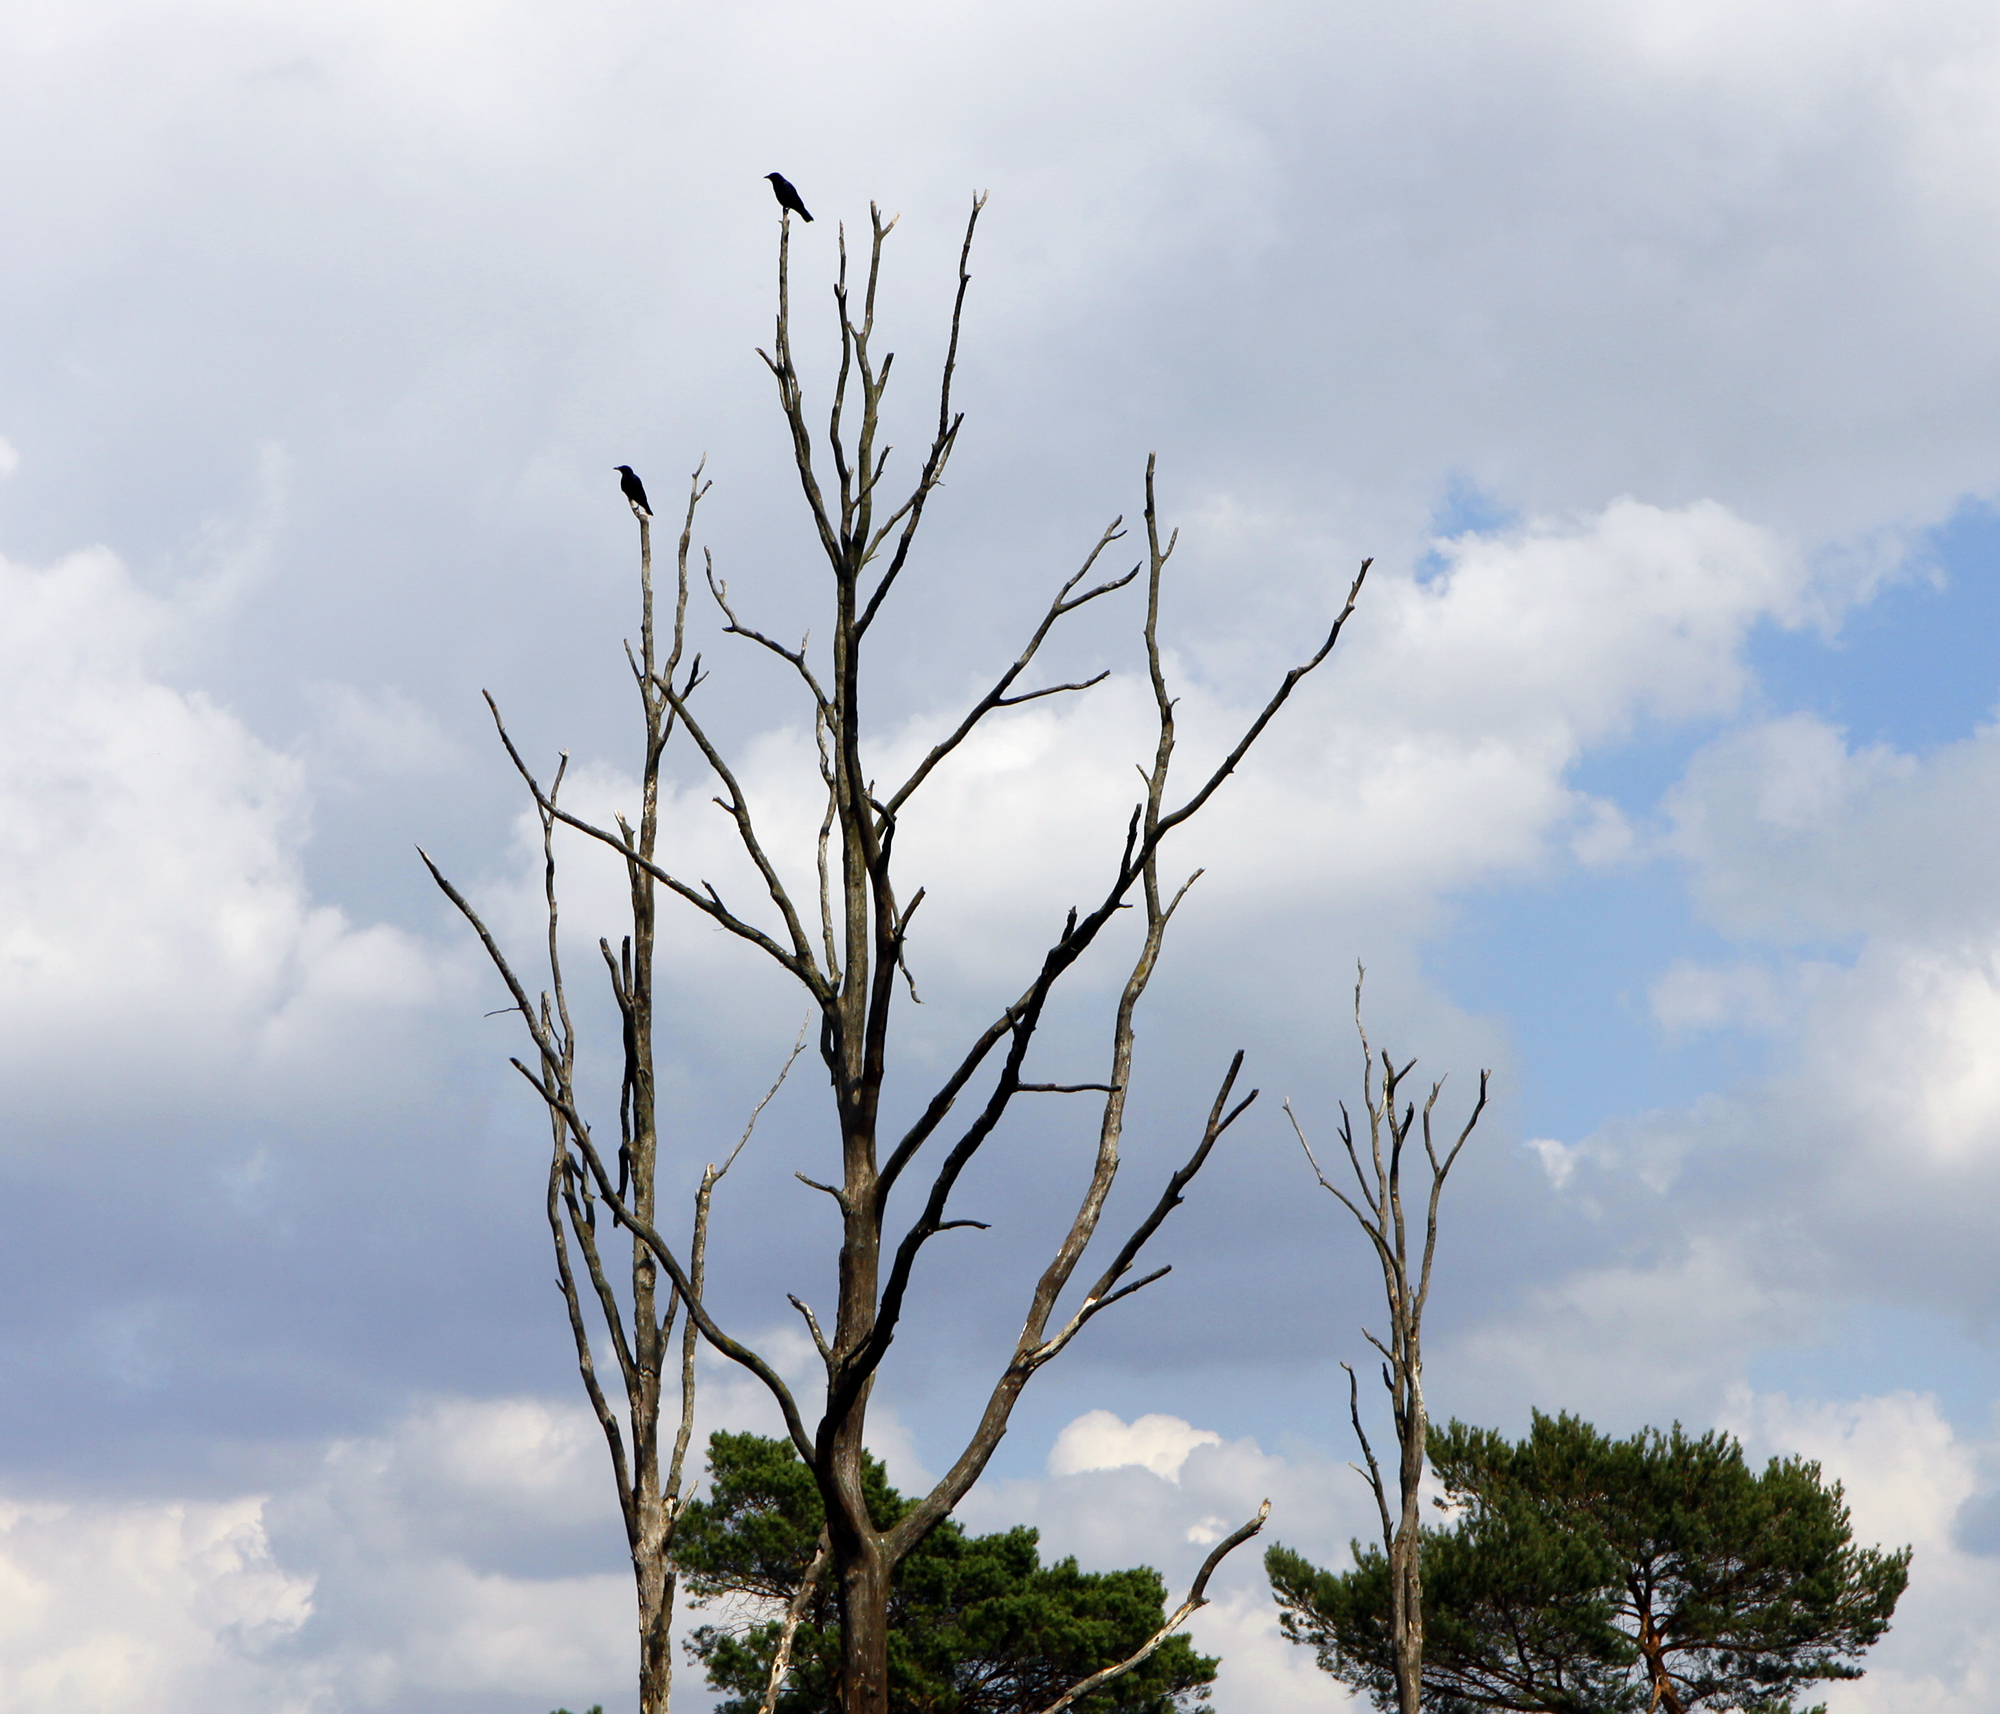 De dode, hoge bomen vormen een goed uitzichtpunt voor vogels.